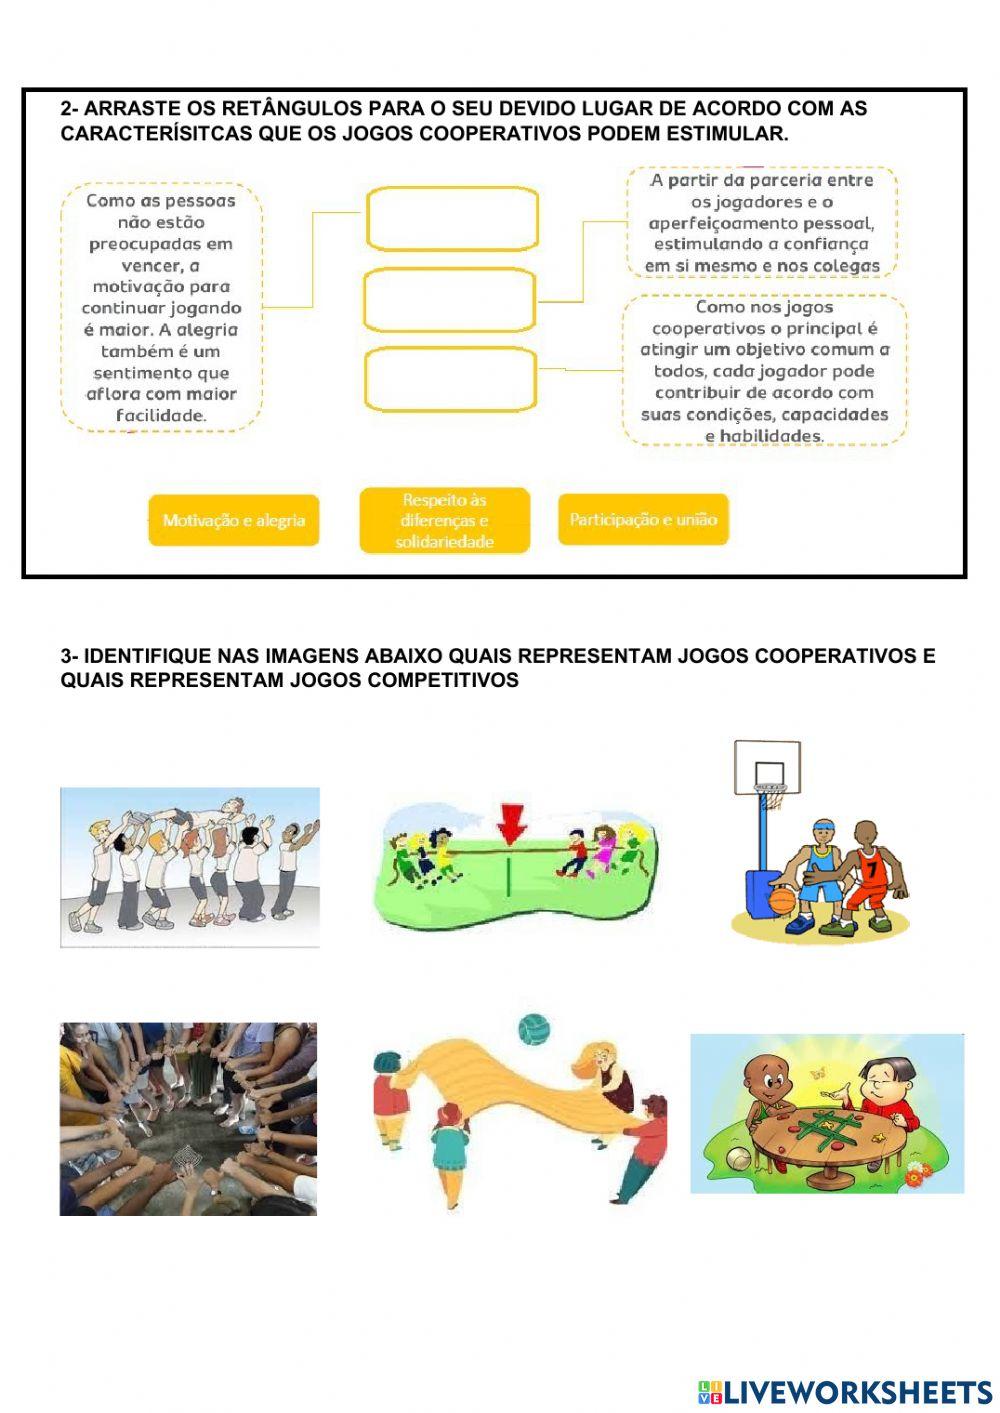 Educação física – Jogos cooperativos x Jogos competitivos – Conexão Escola  SME